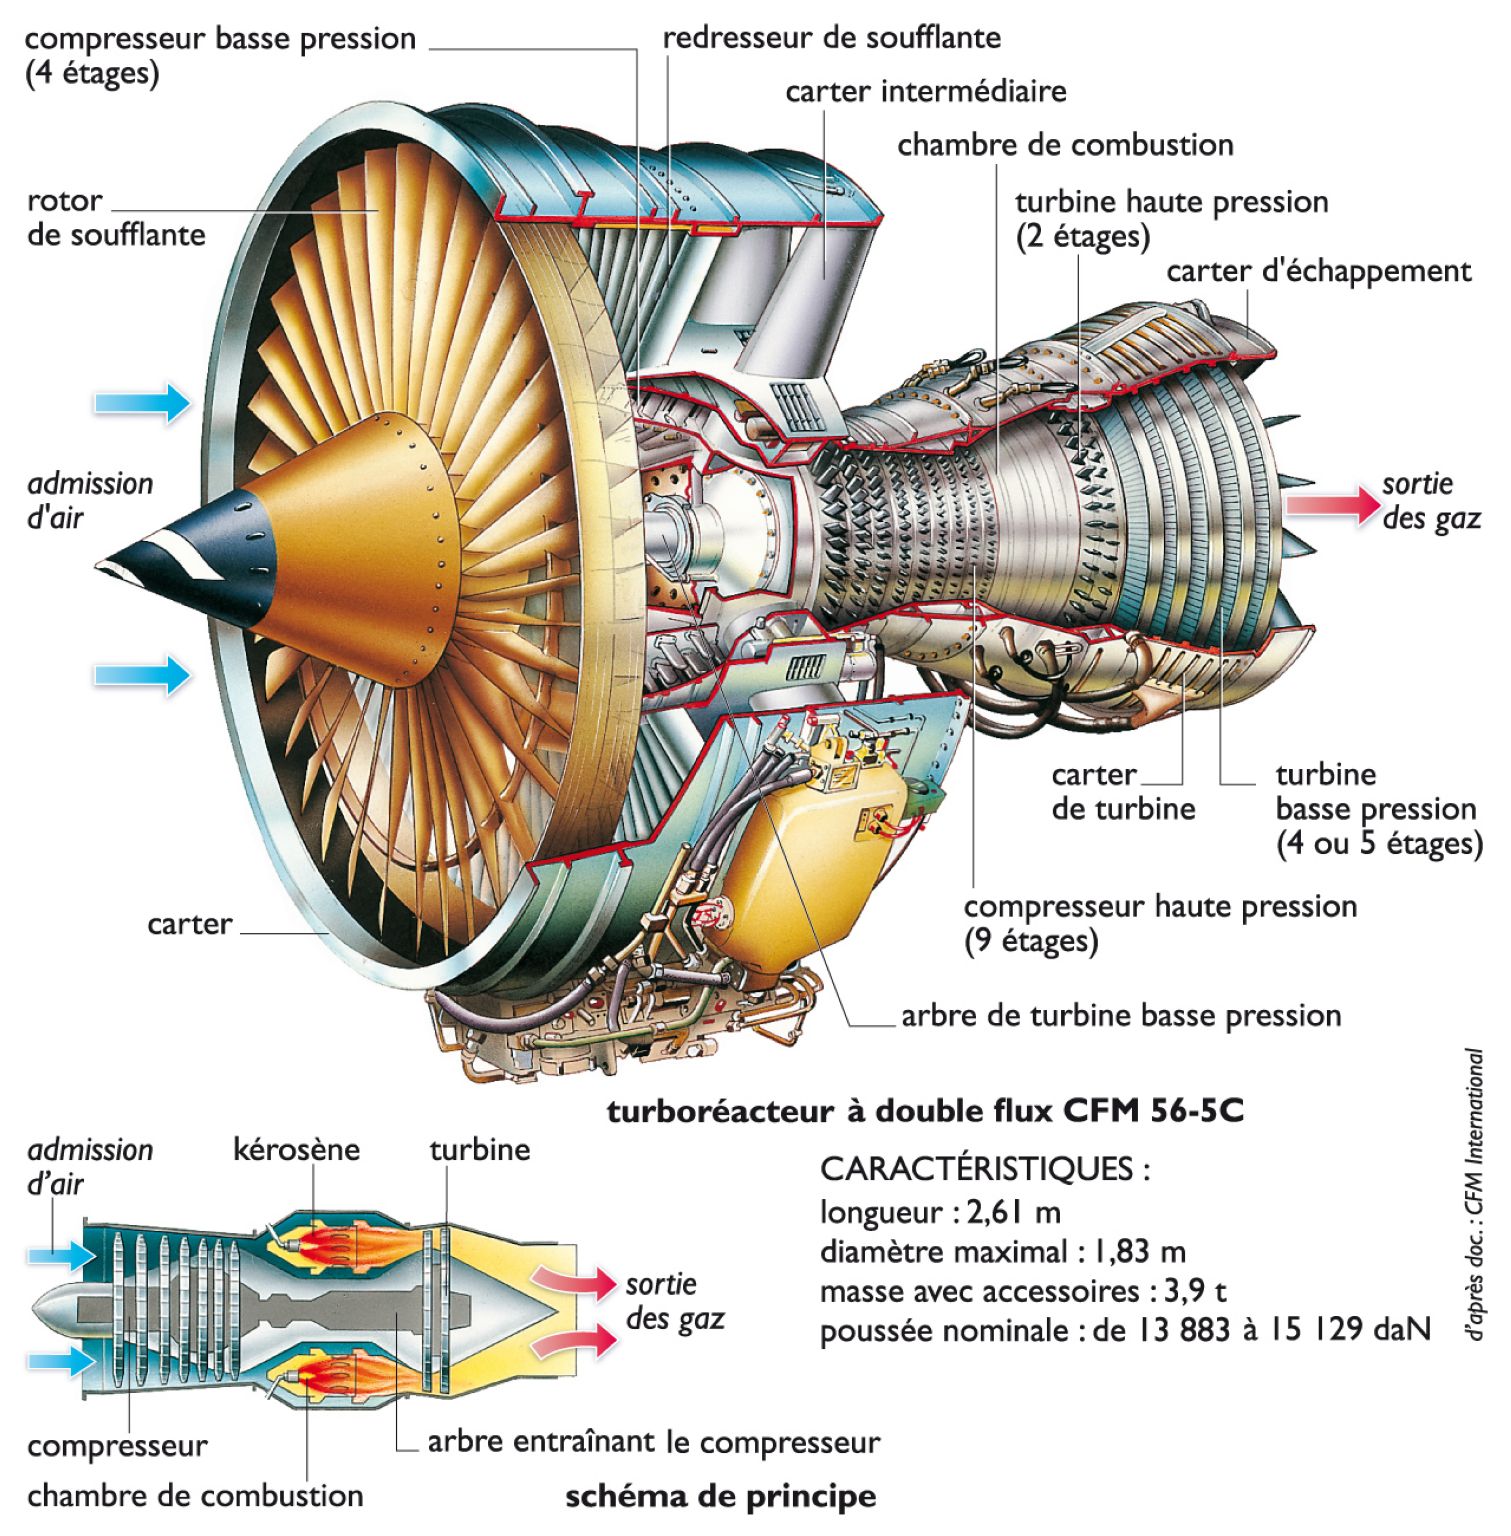 fonctionnement d’un turboréacteur